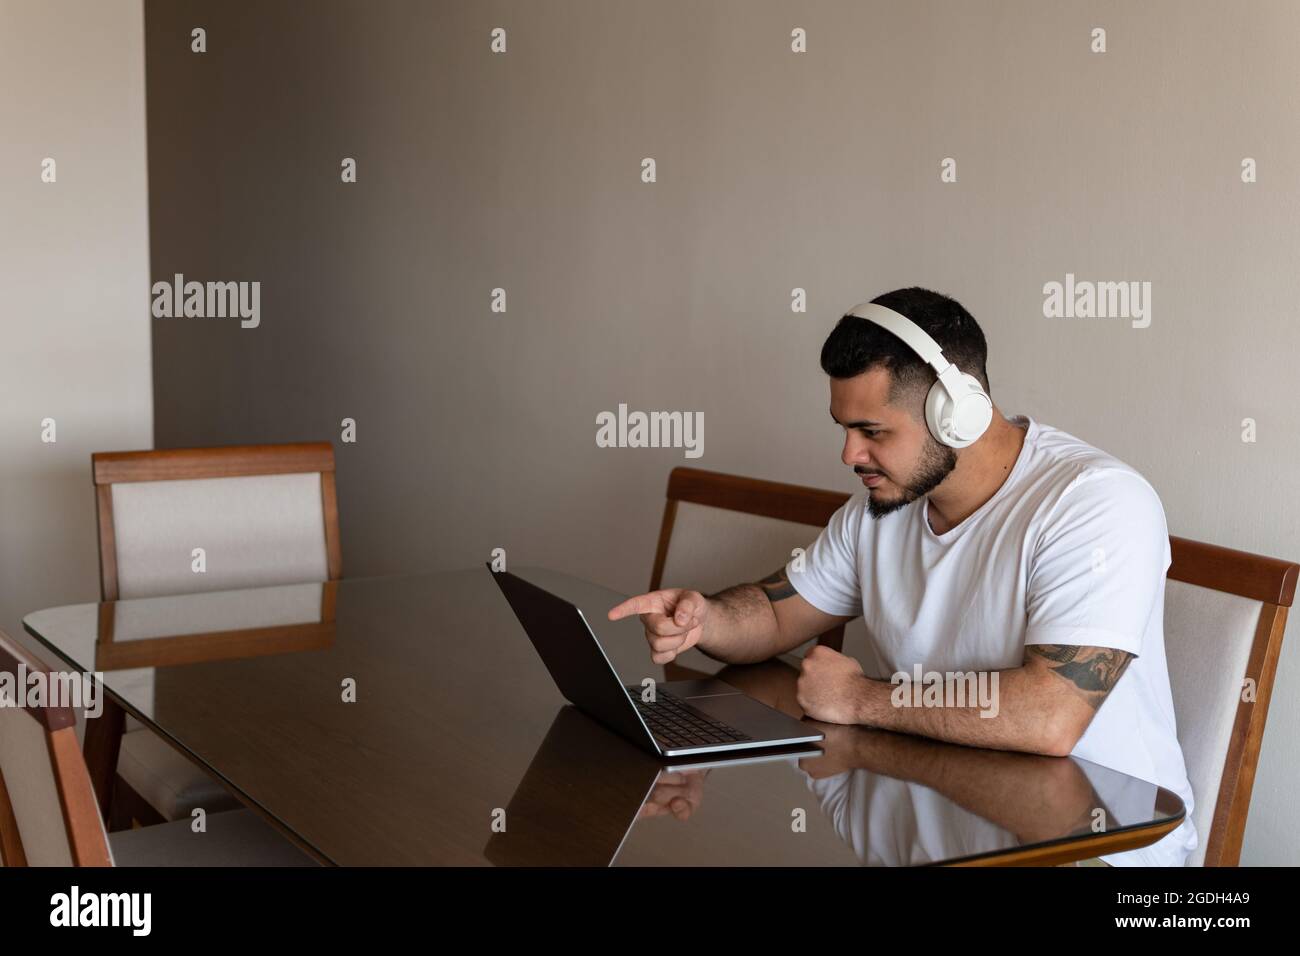 Latino homme avec des tatouages et des écouteurs pointant son doigt sur l'écran de l'ordinateur portable Banque D'Images